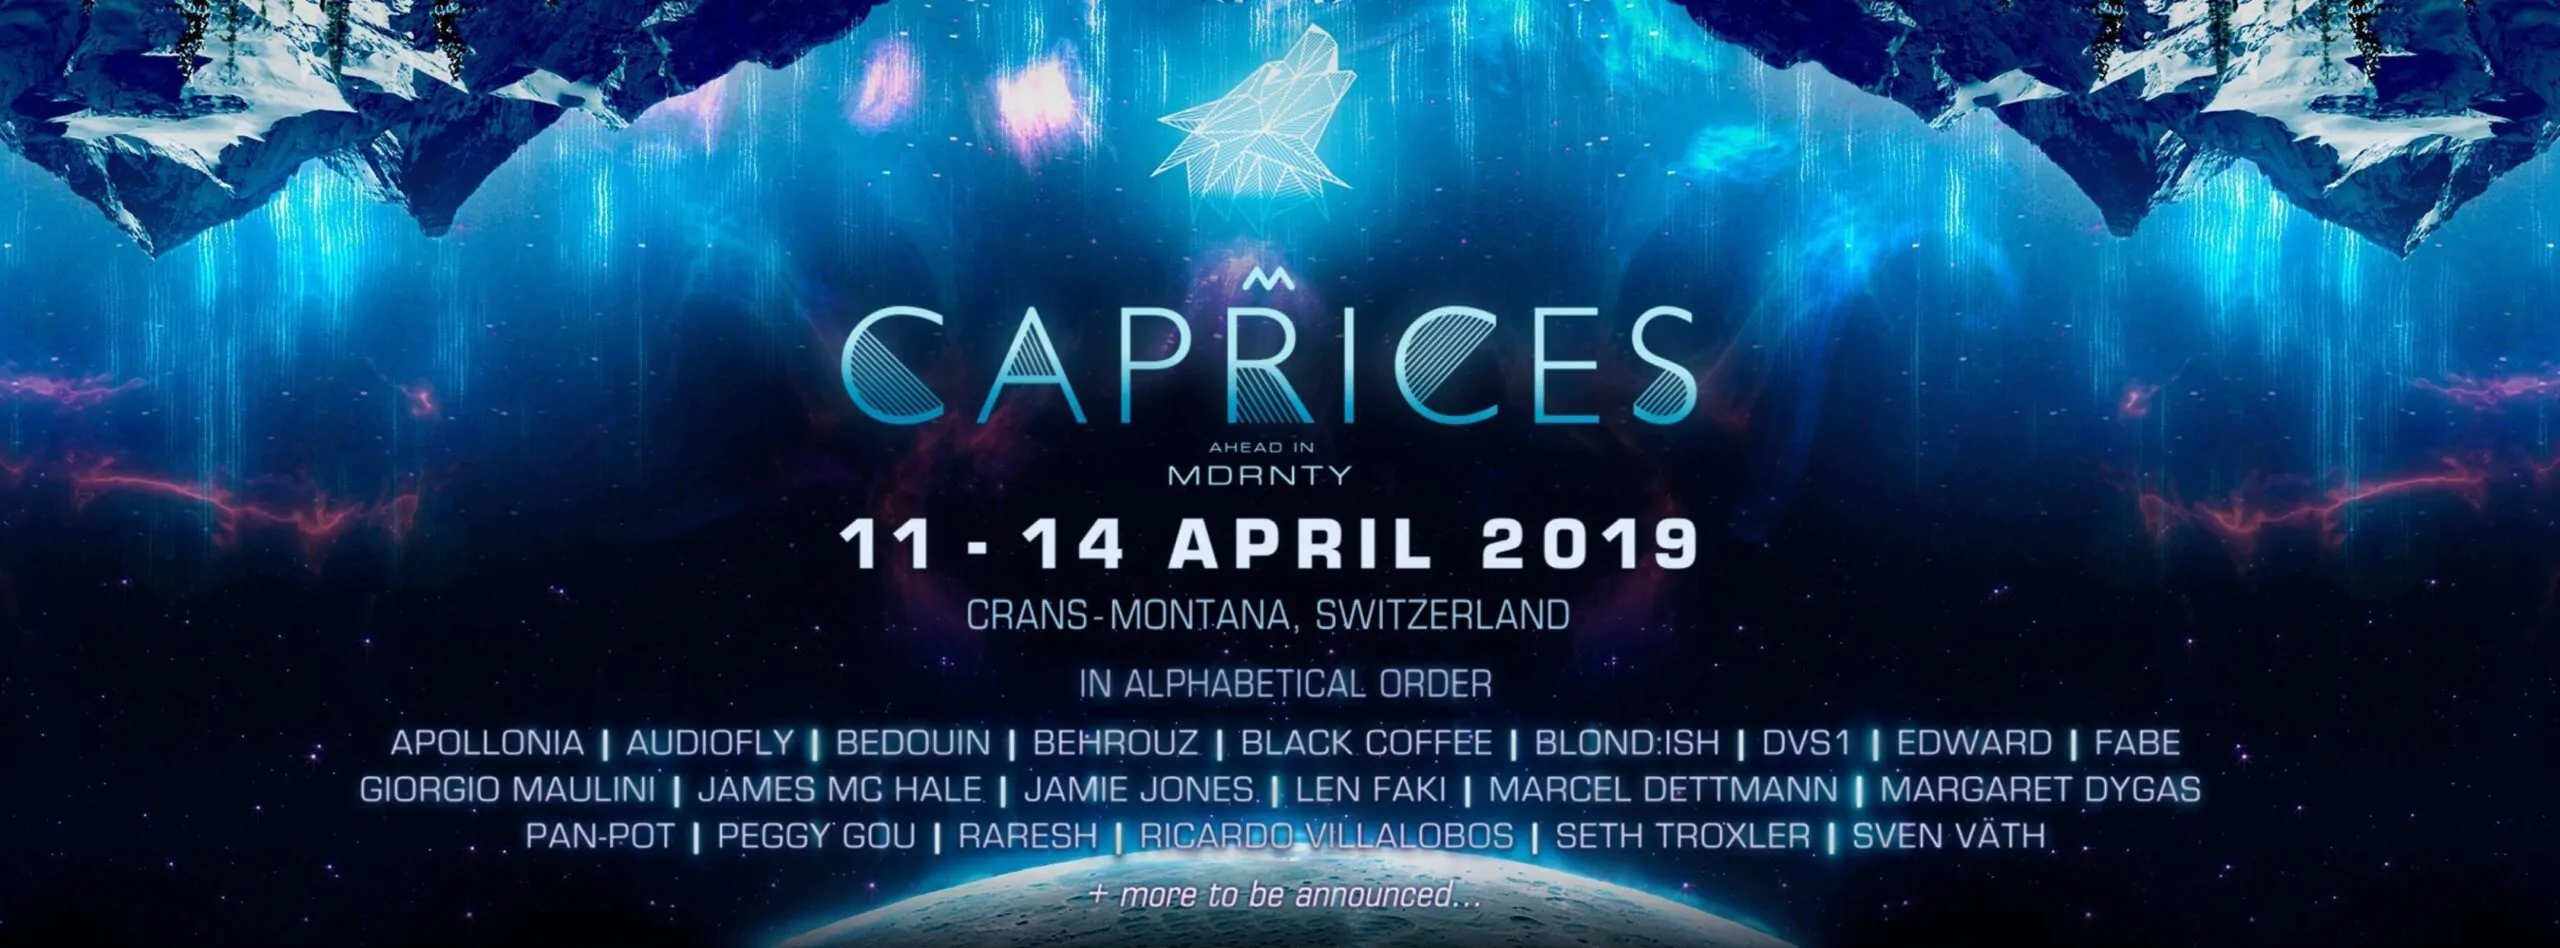 CAPRICES FESTIVAL 11 14 APRILE 2019 TICKET PACCHETTI HOTEL